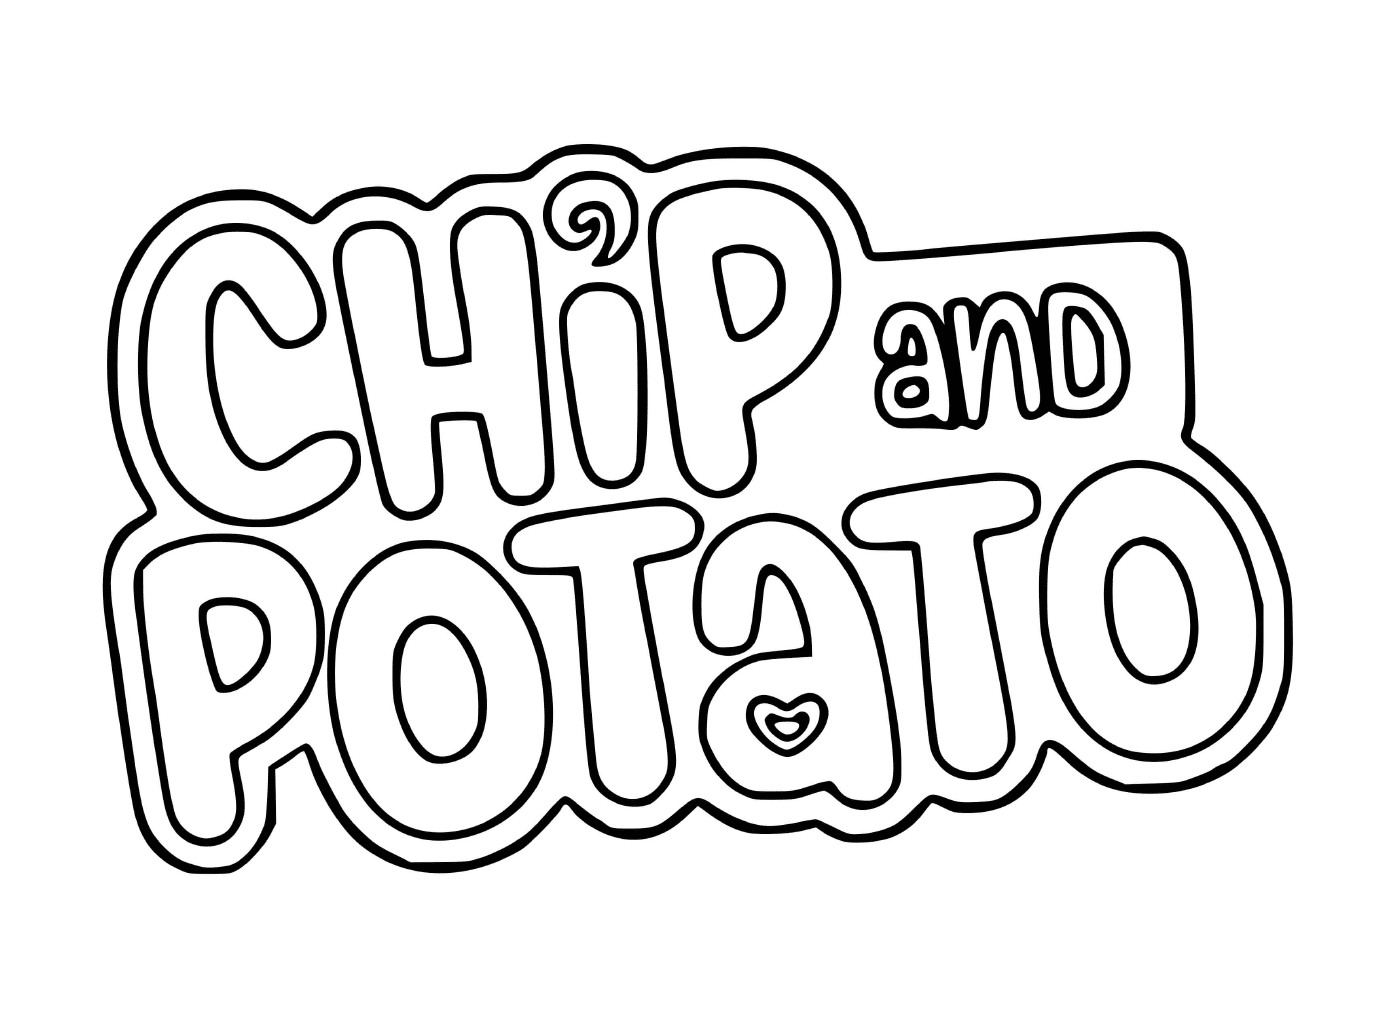   Logo de Chip et Patate 